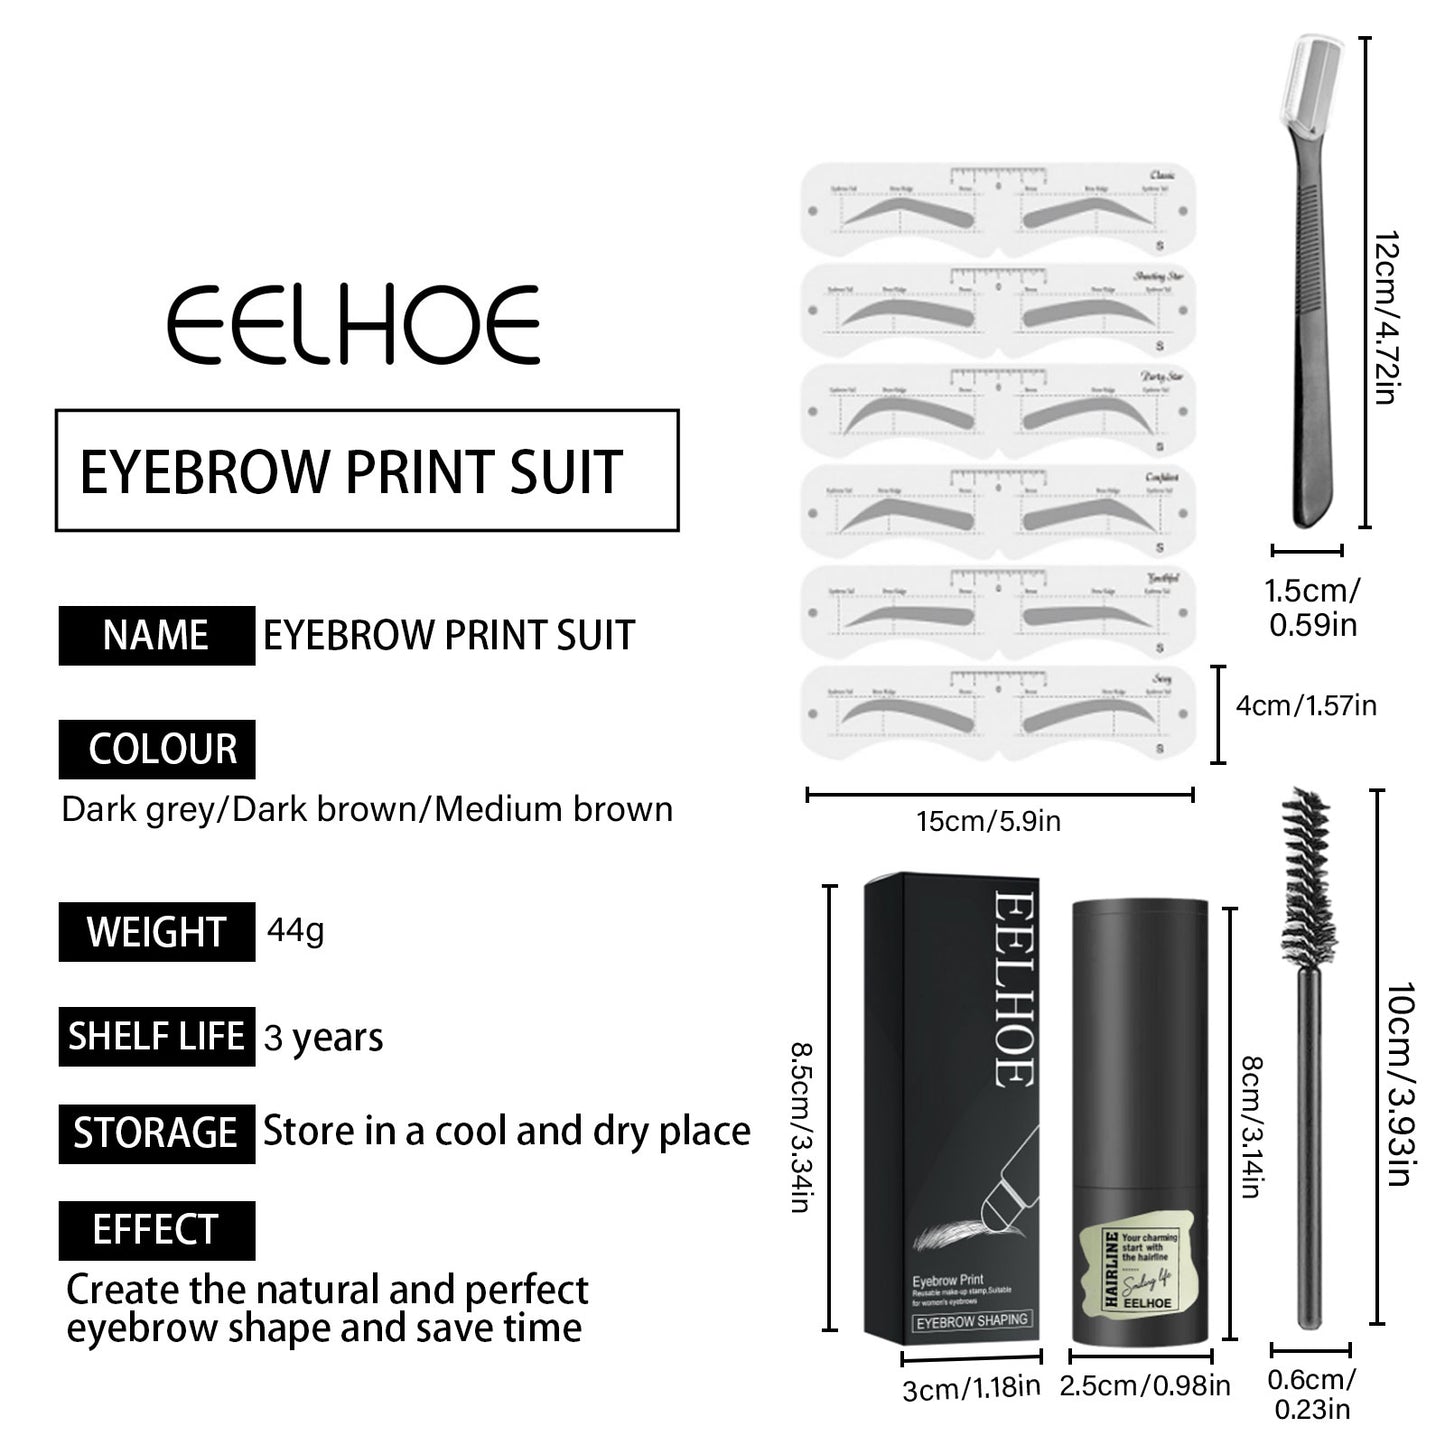 EELHOE Eyebrow Powder Waterproof, Sweatproof, No Makeup